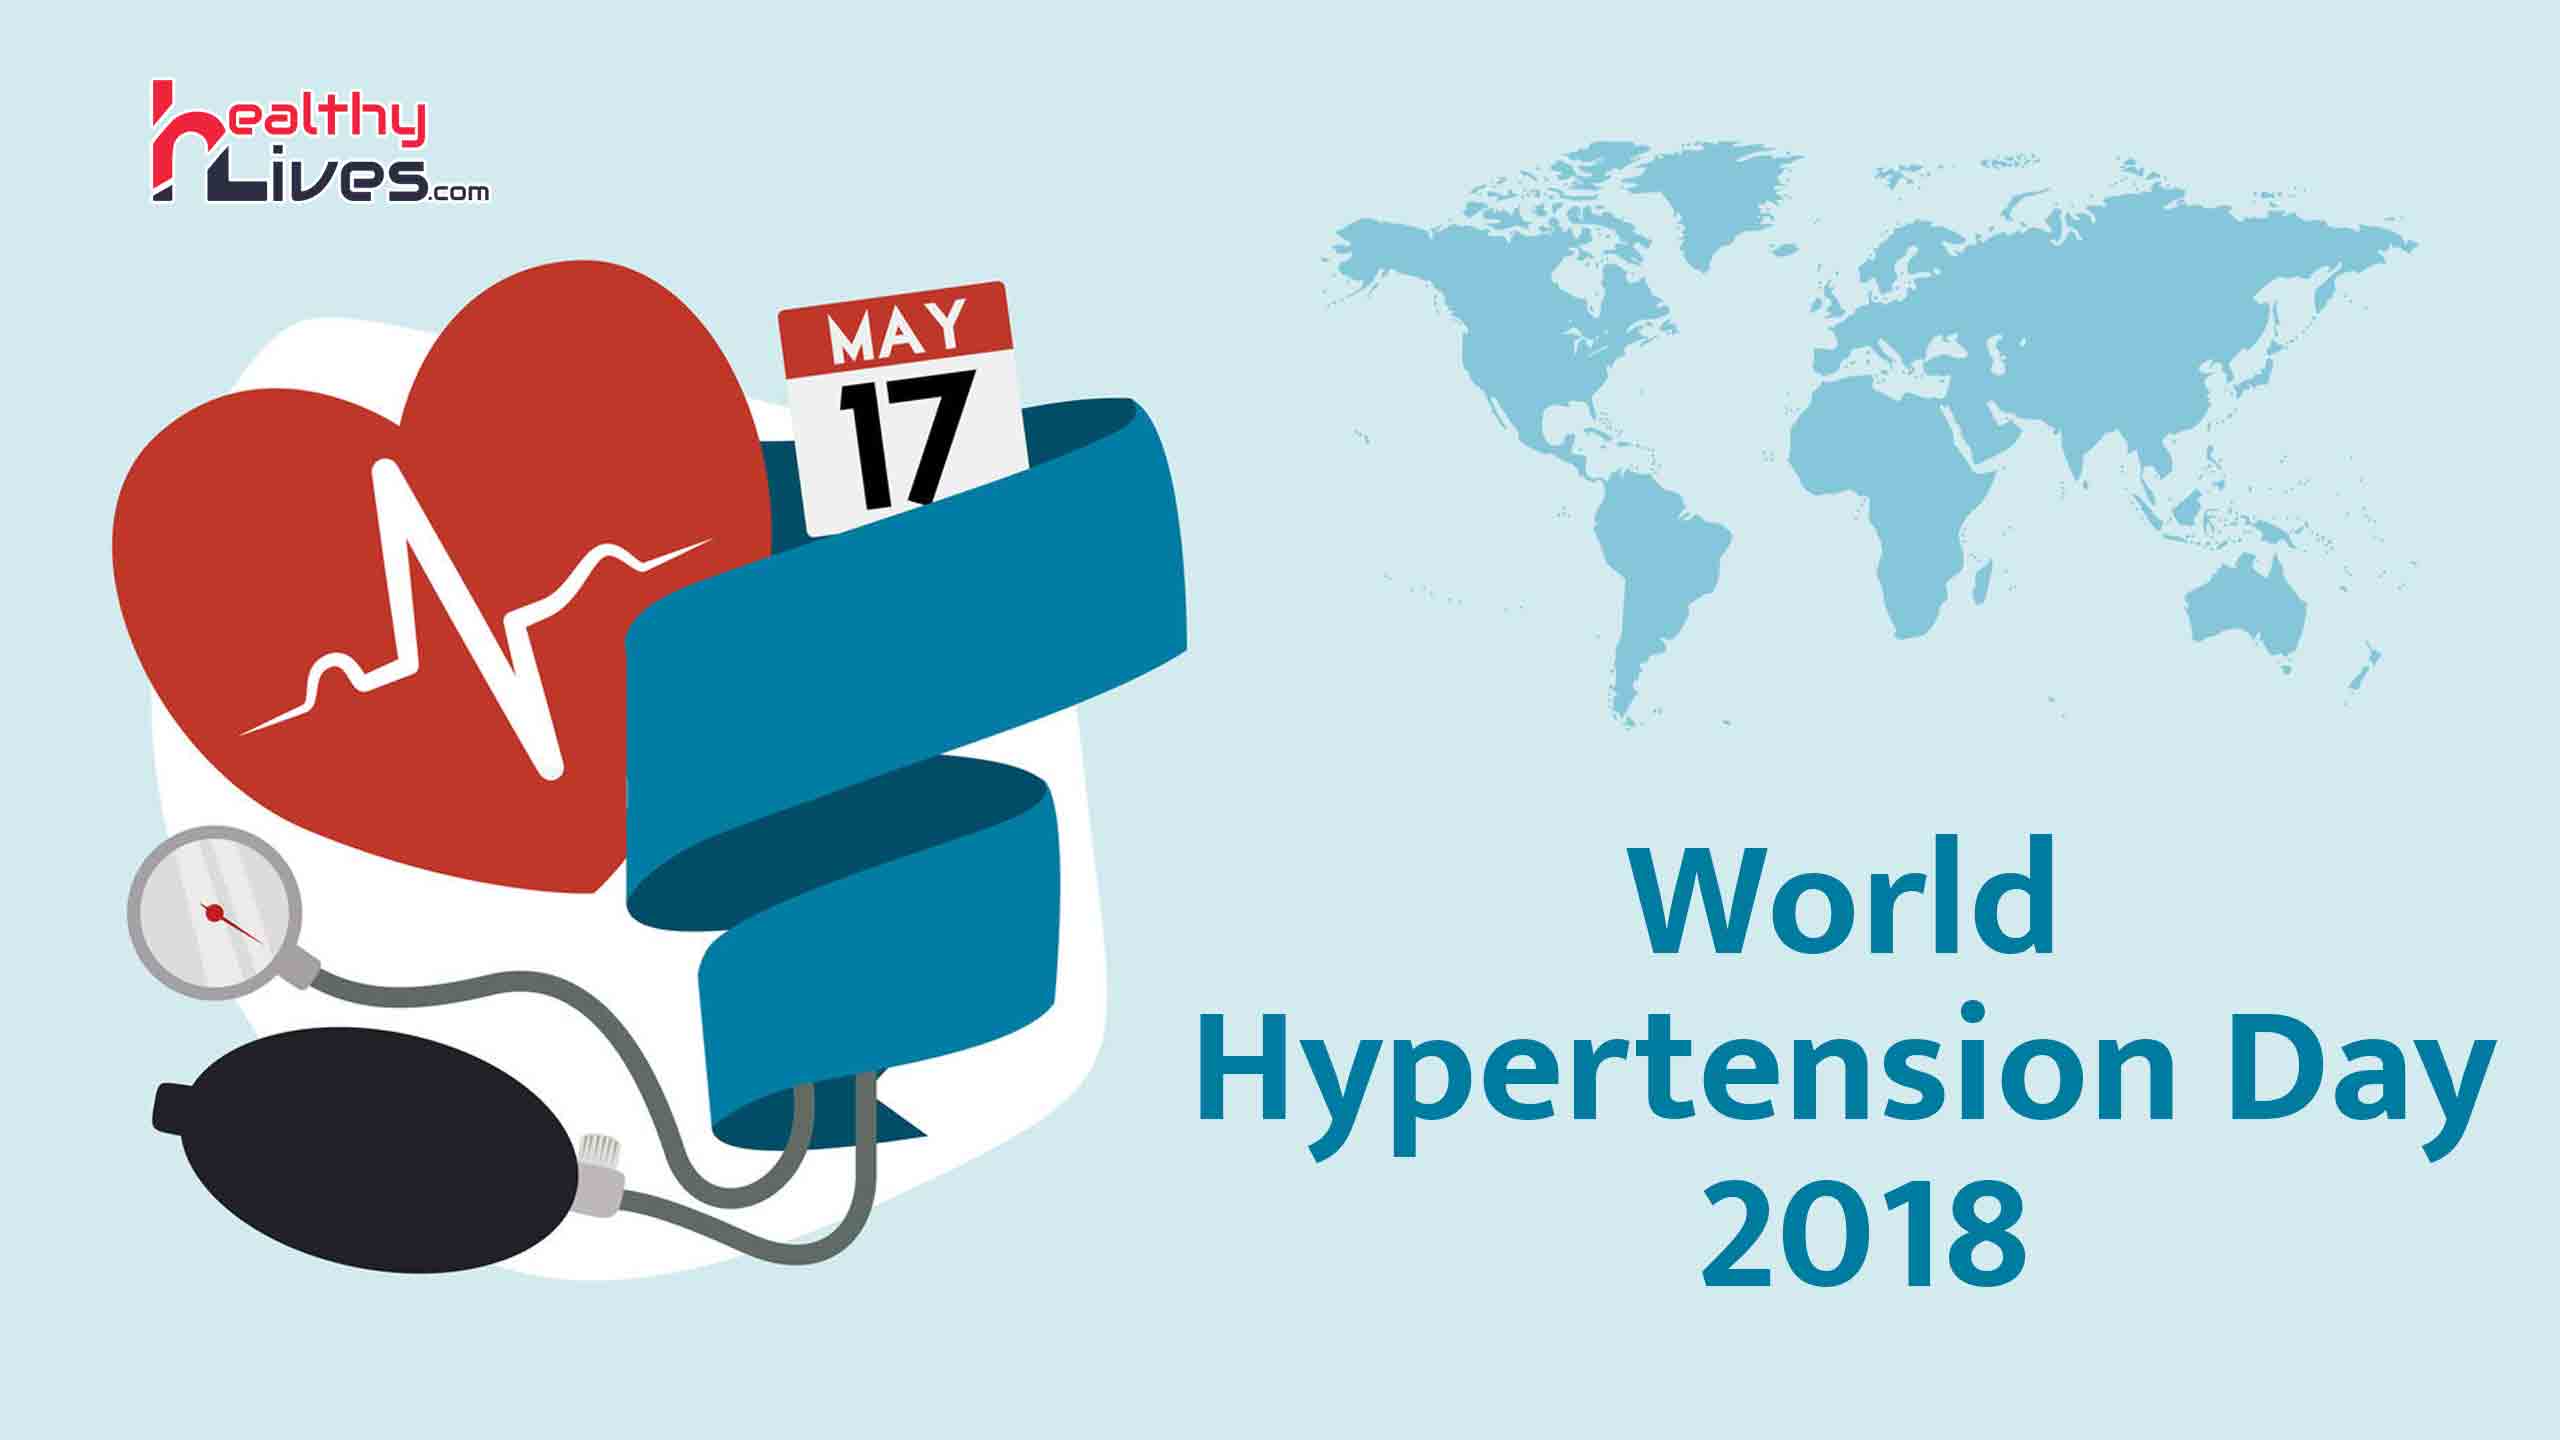 World Hypertension Day 2018: हाई ब्लड प्रेशर की समस्या को न करे नज़रअंदाज़